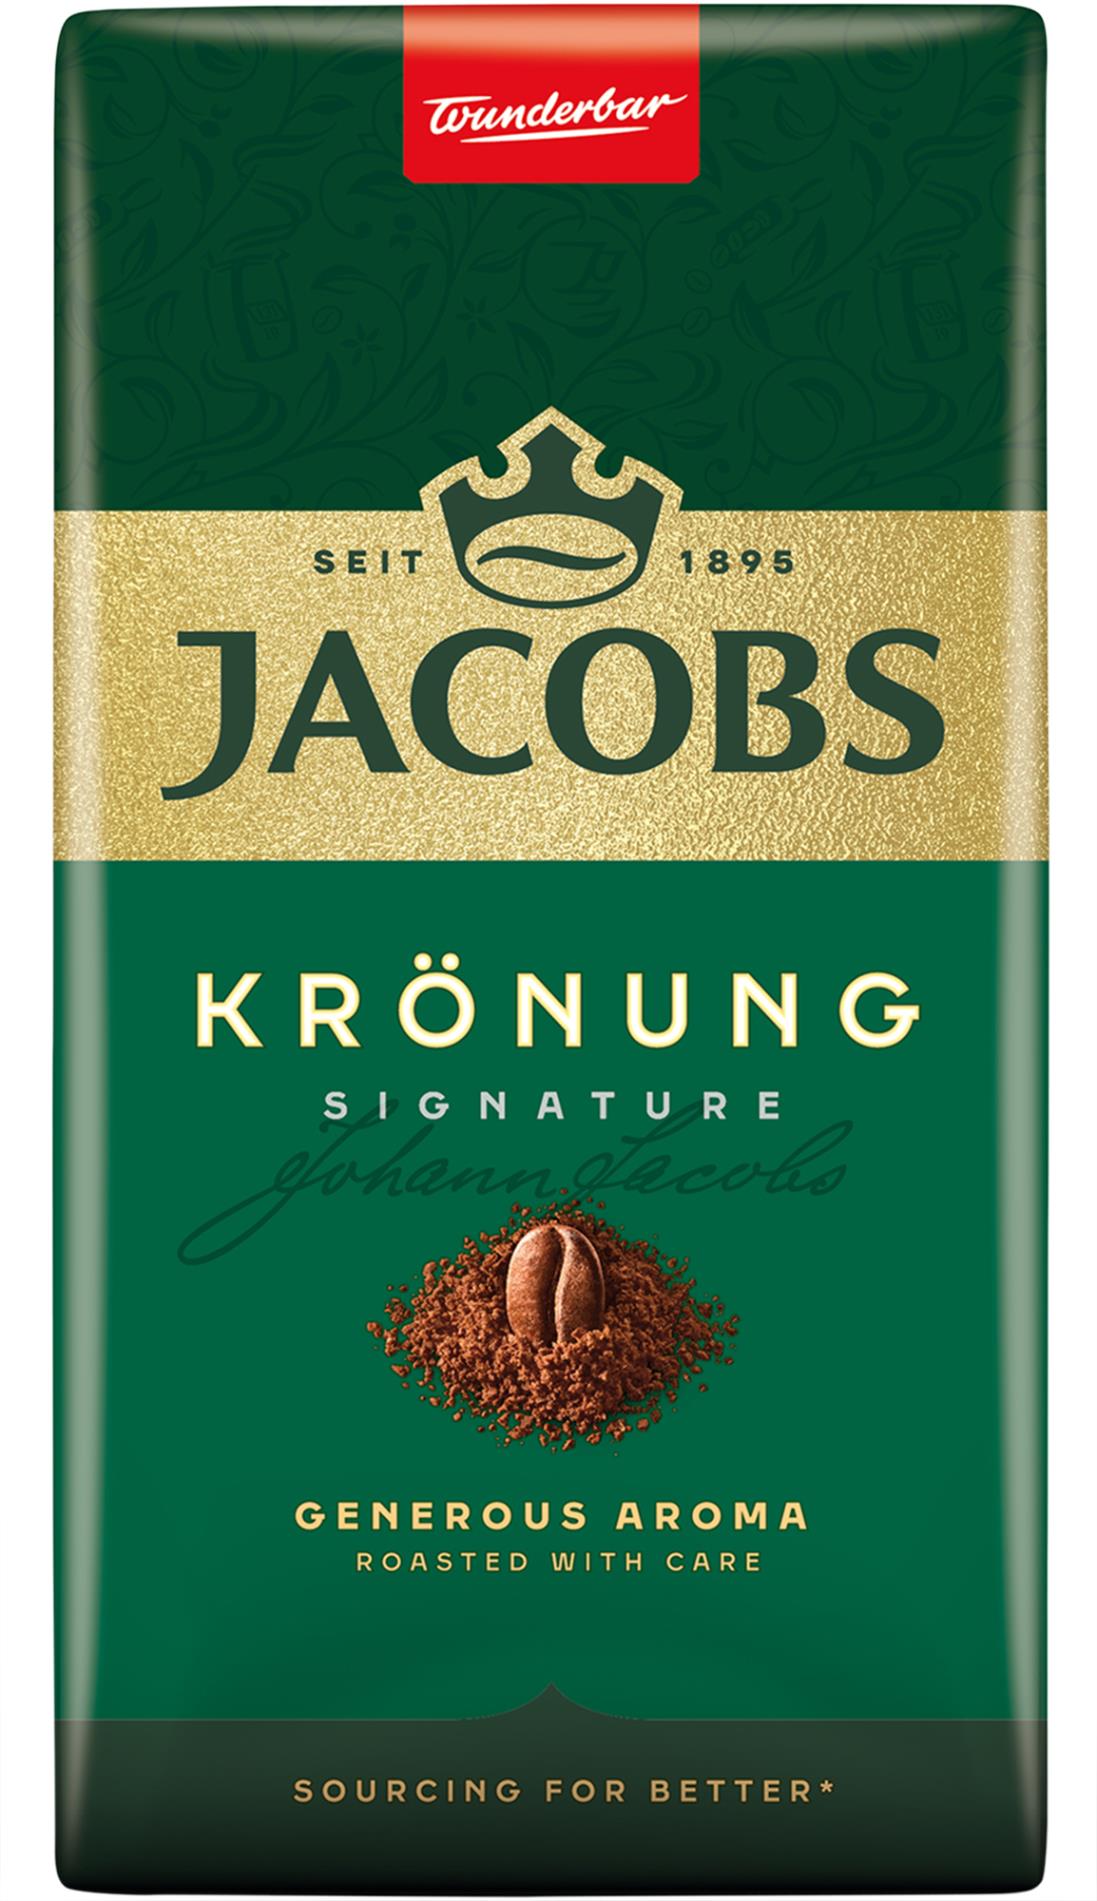 Káva mletá Jacobs Krönung - 250 g